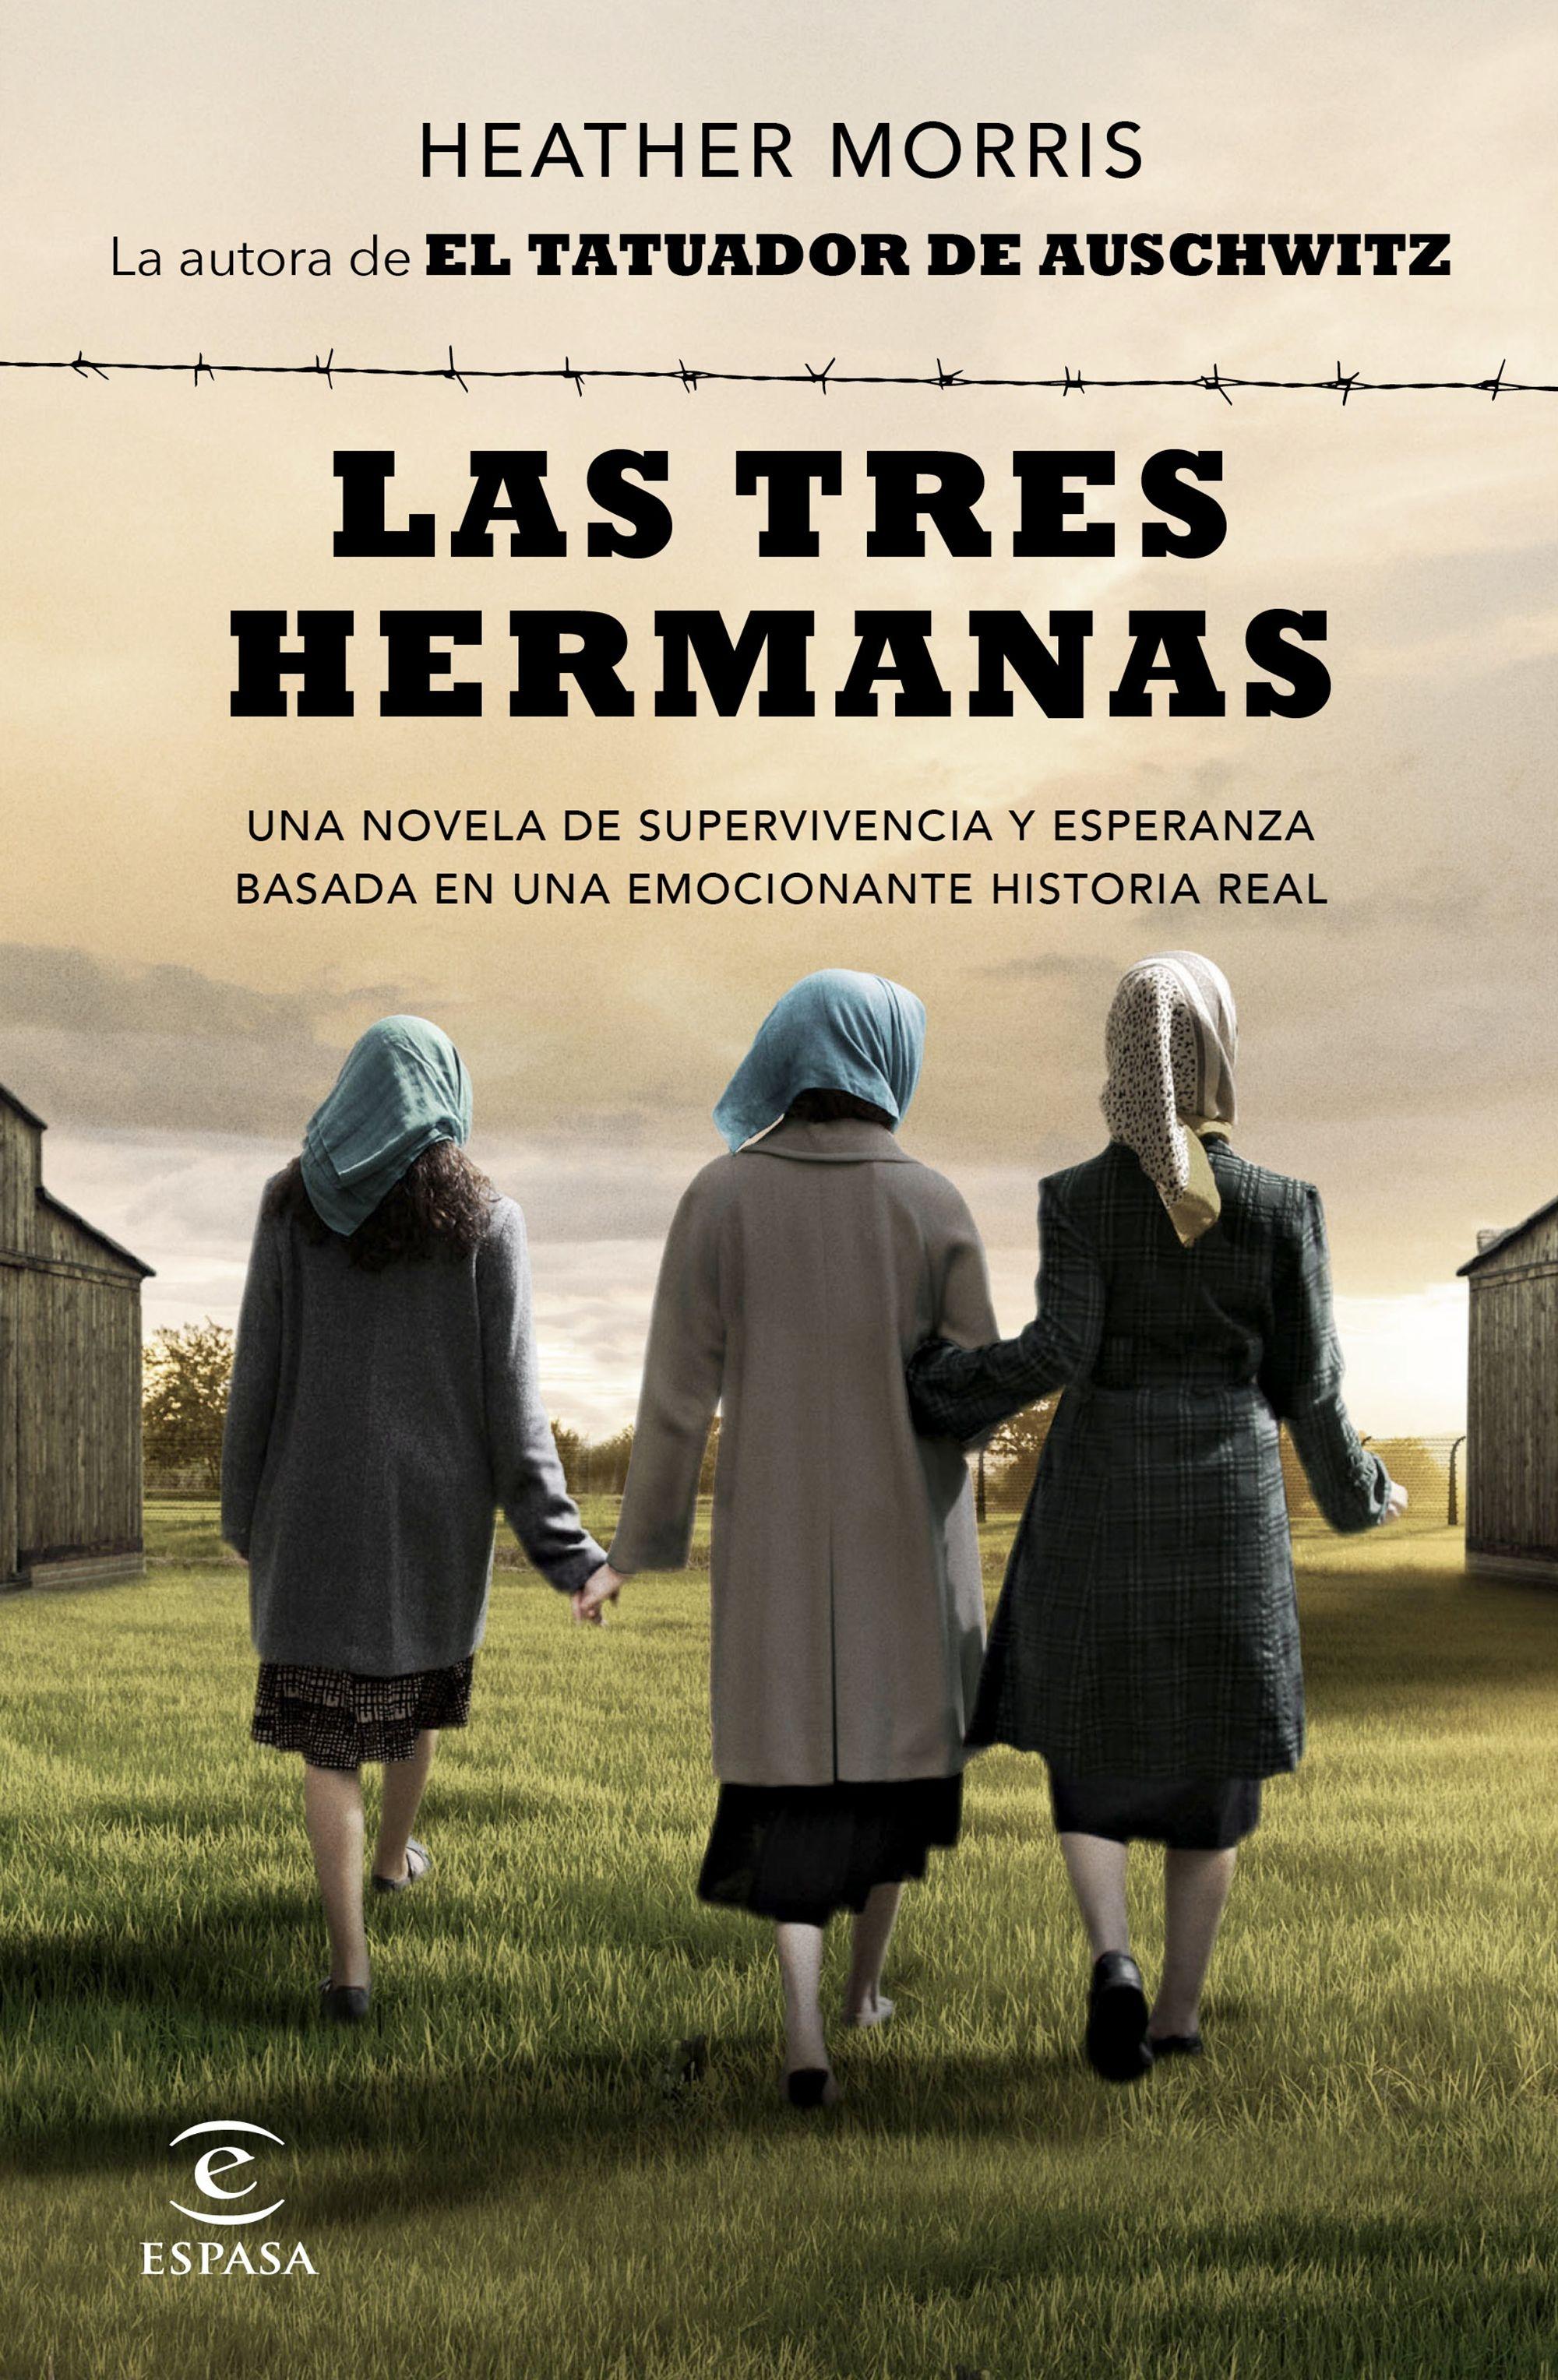 Tres hermanas, Las "Una novela de supervivencia y esperanza basada en una historia real"